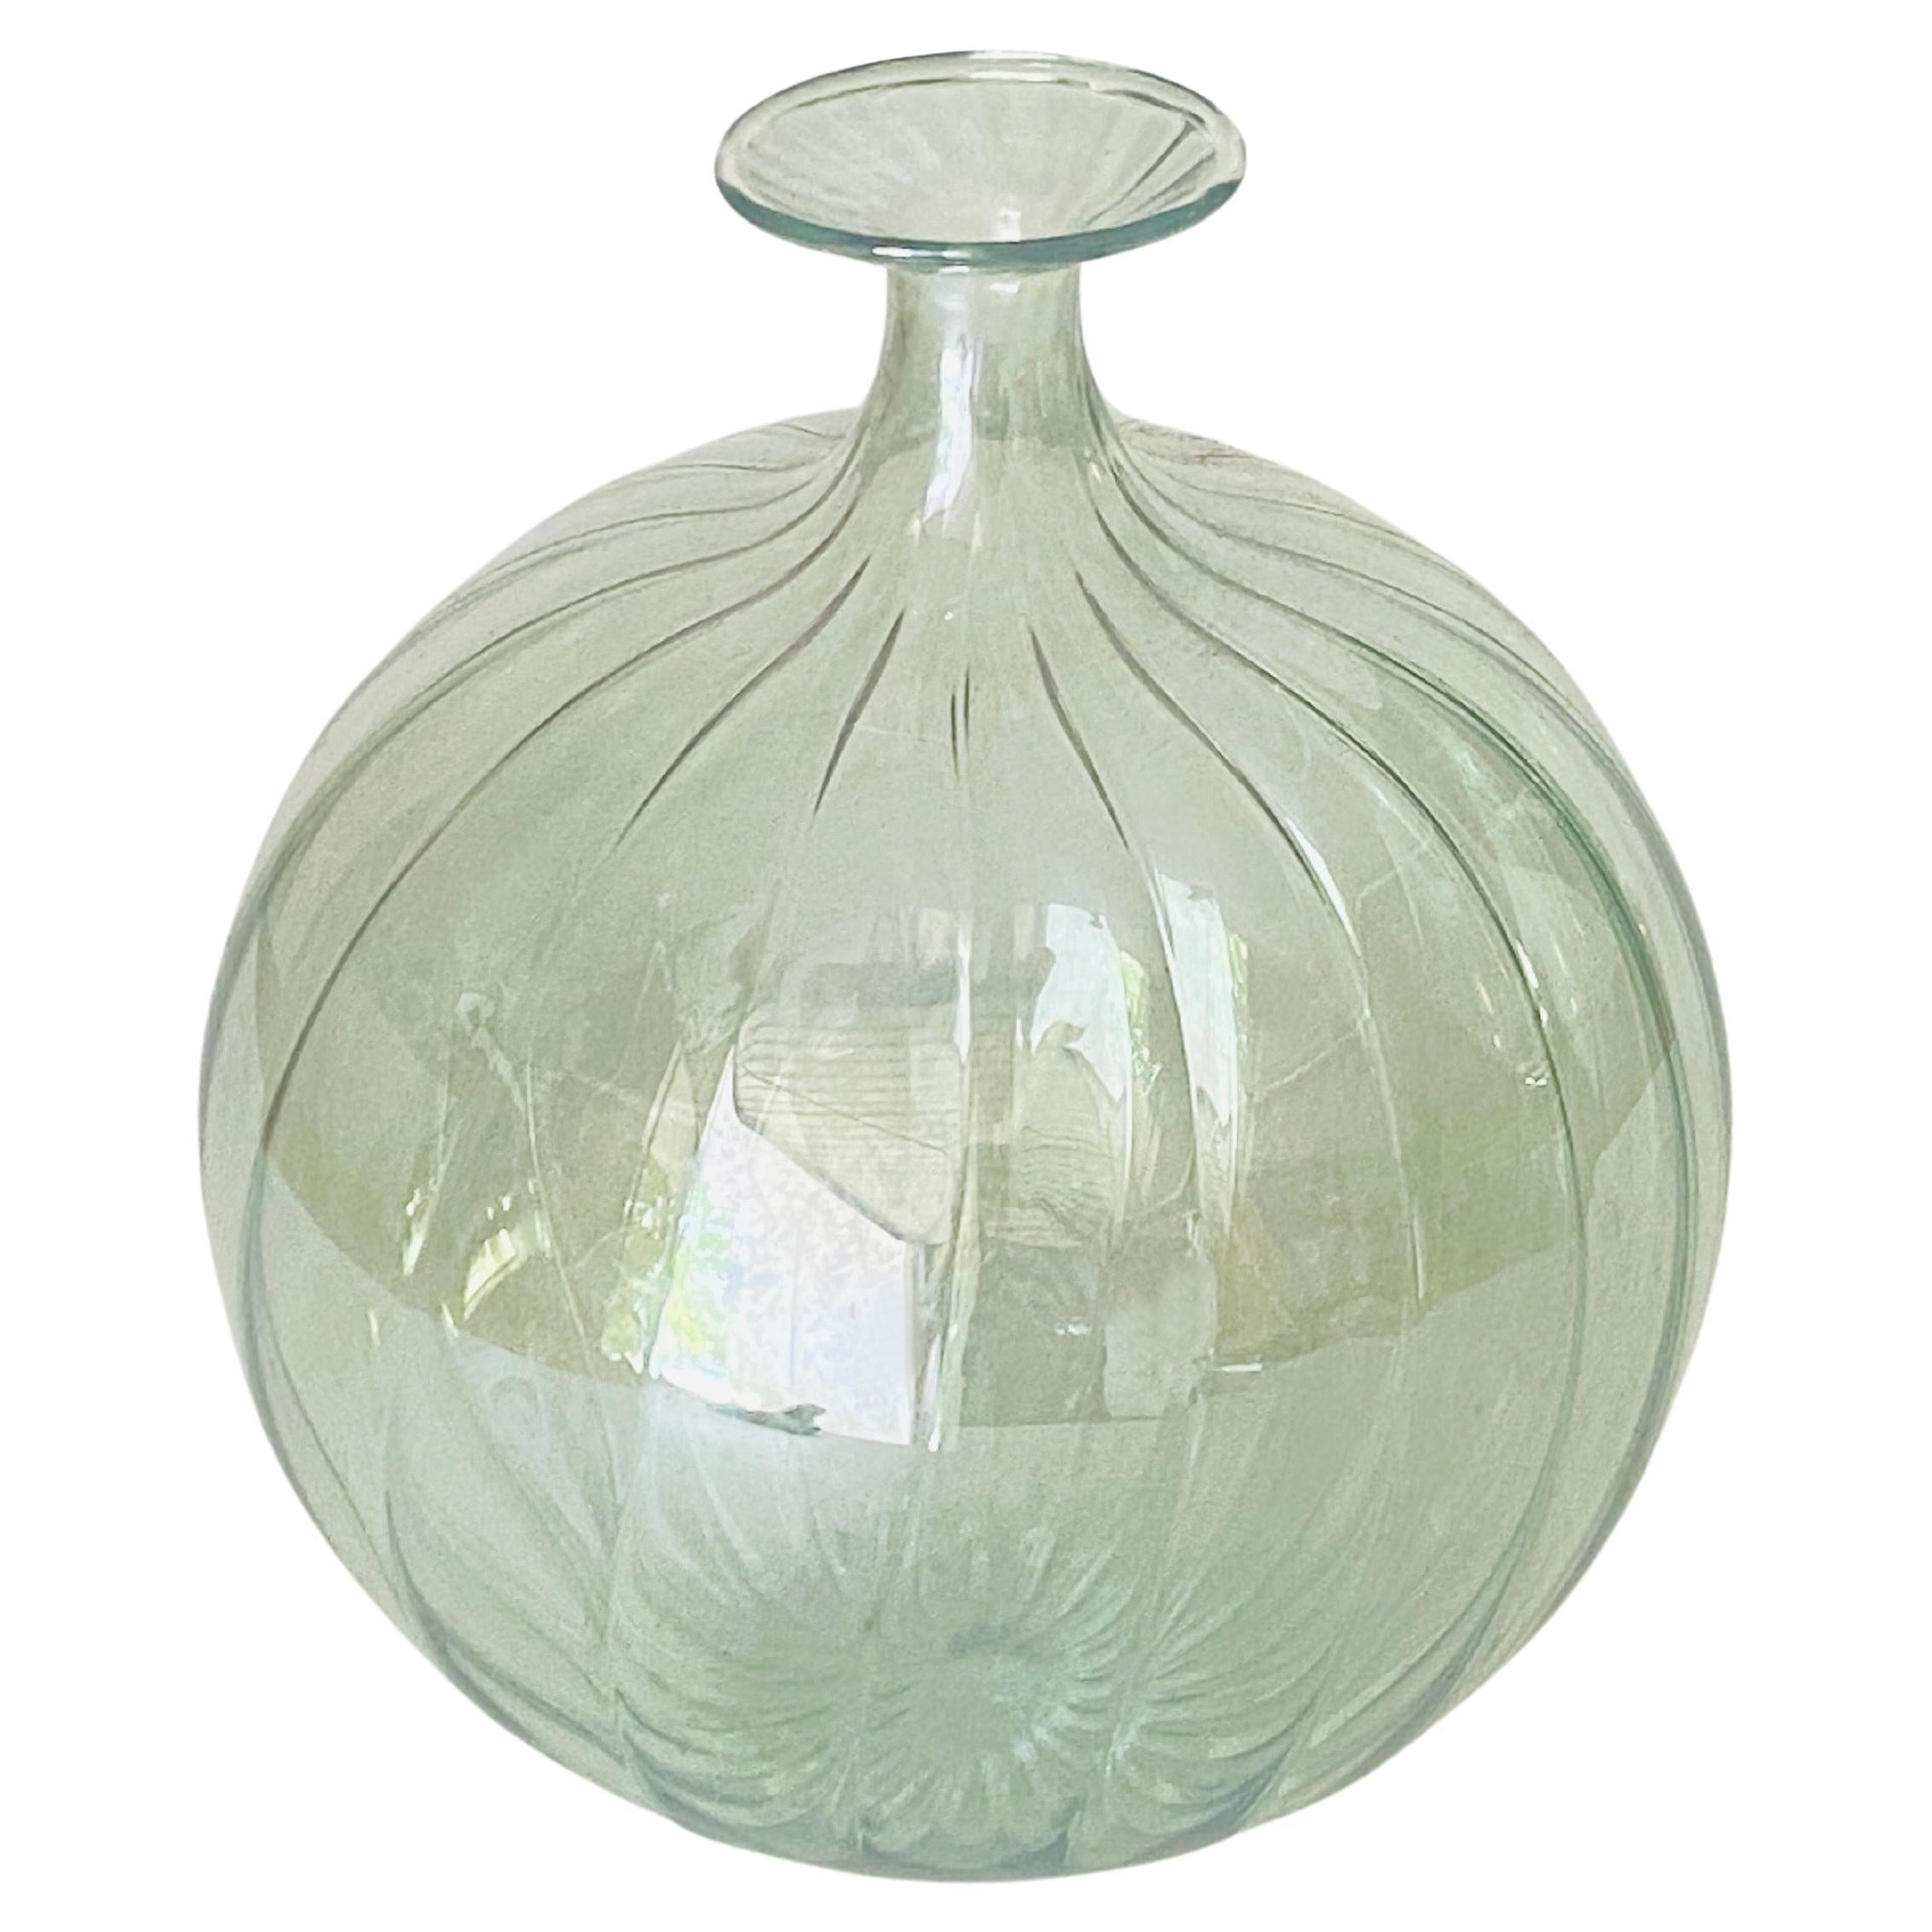 Vetro Soffiato Glass Vase 1970 Green Color Very Light In the style of Venini